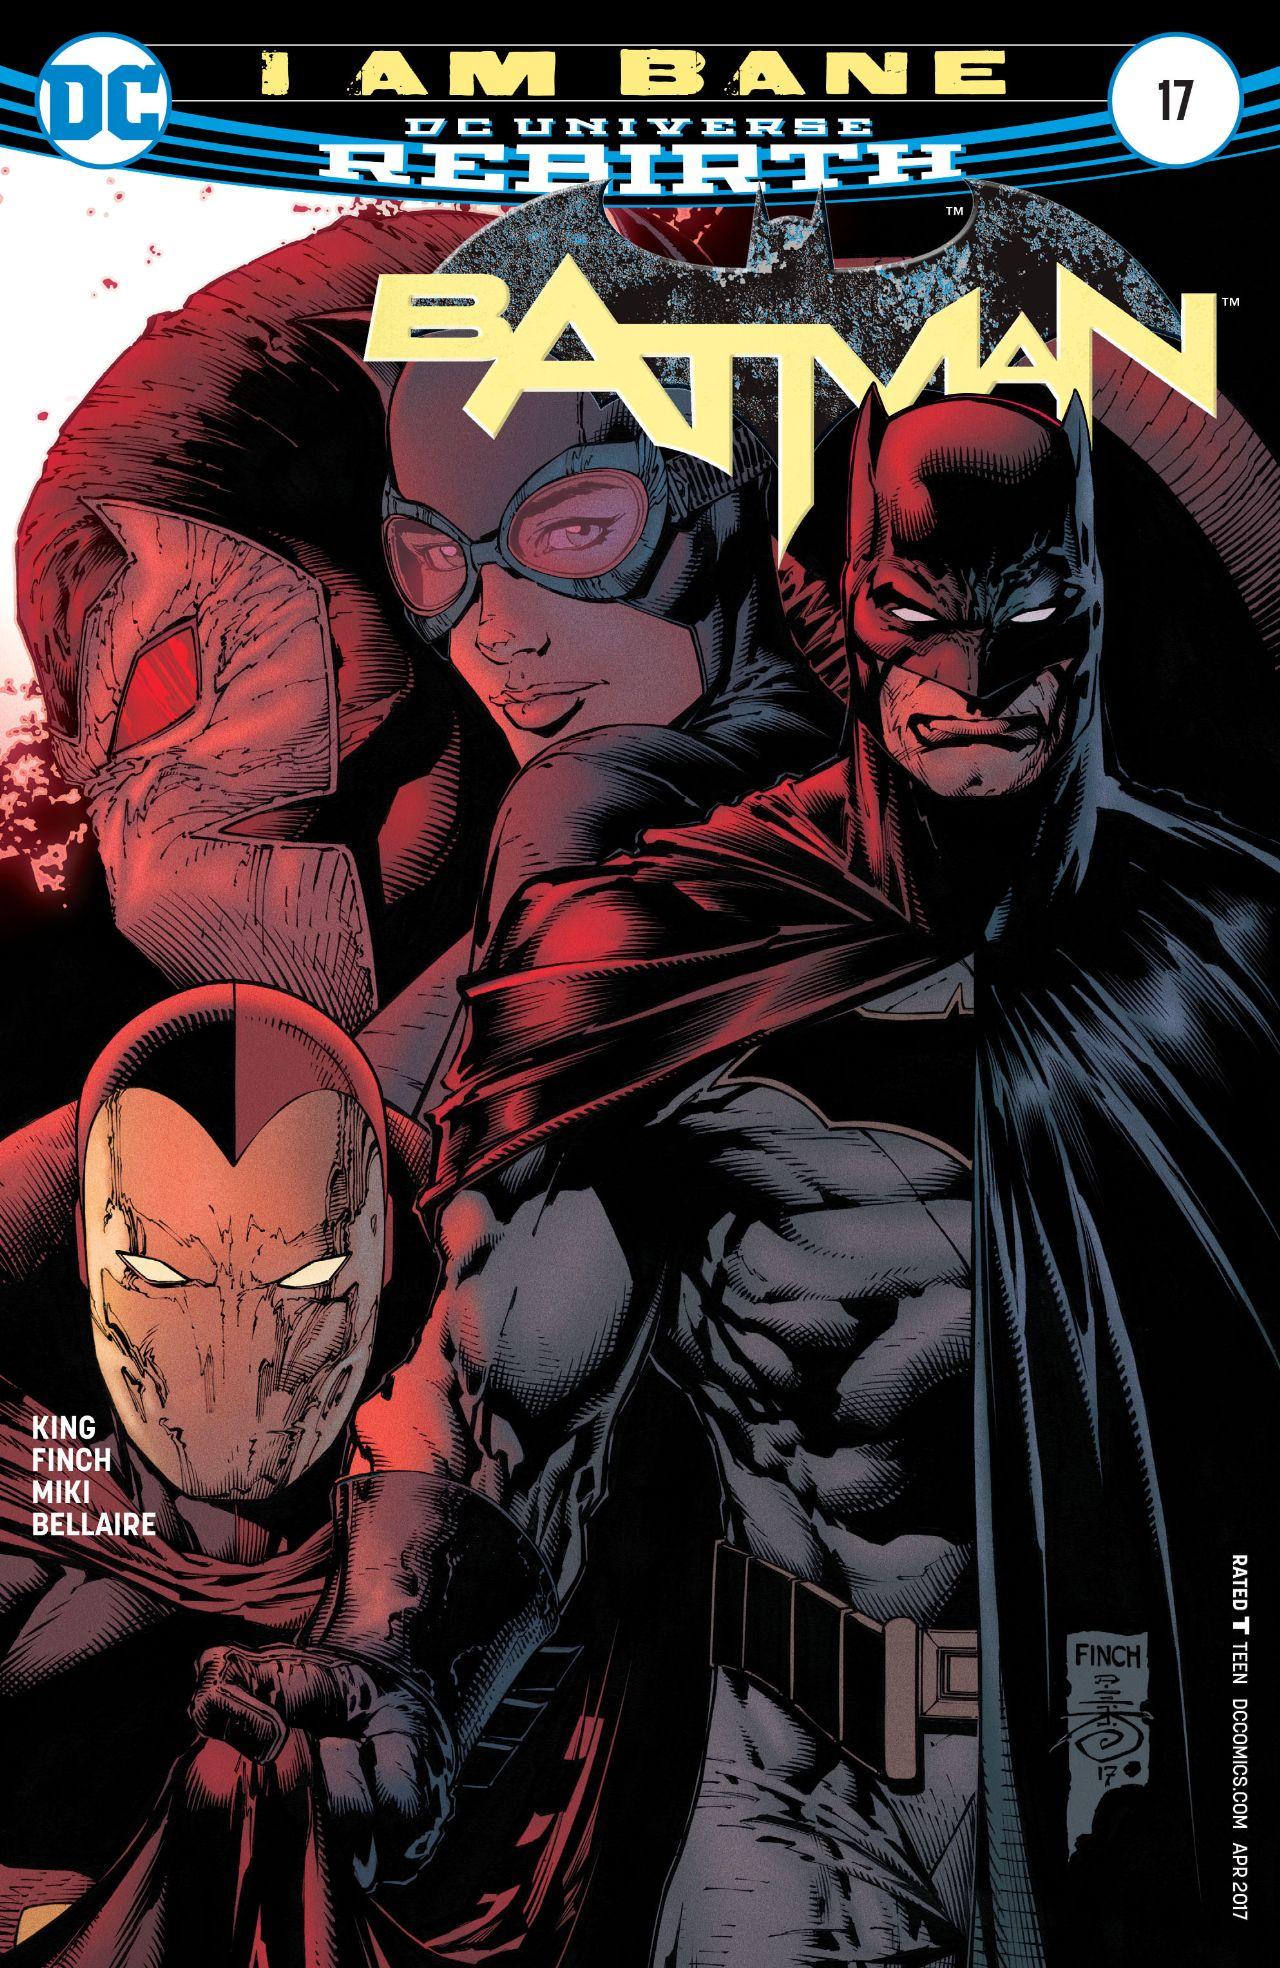 Batman Vol. 3 #17